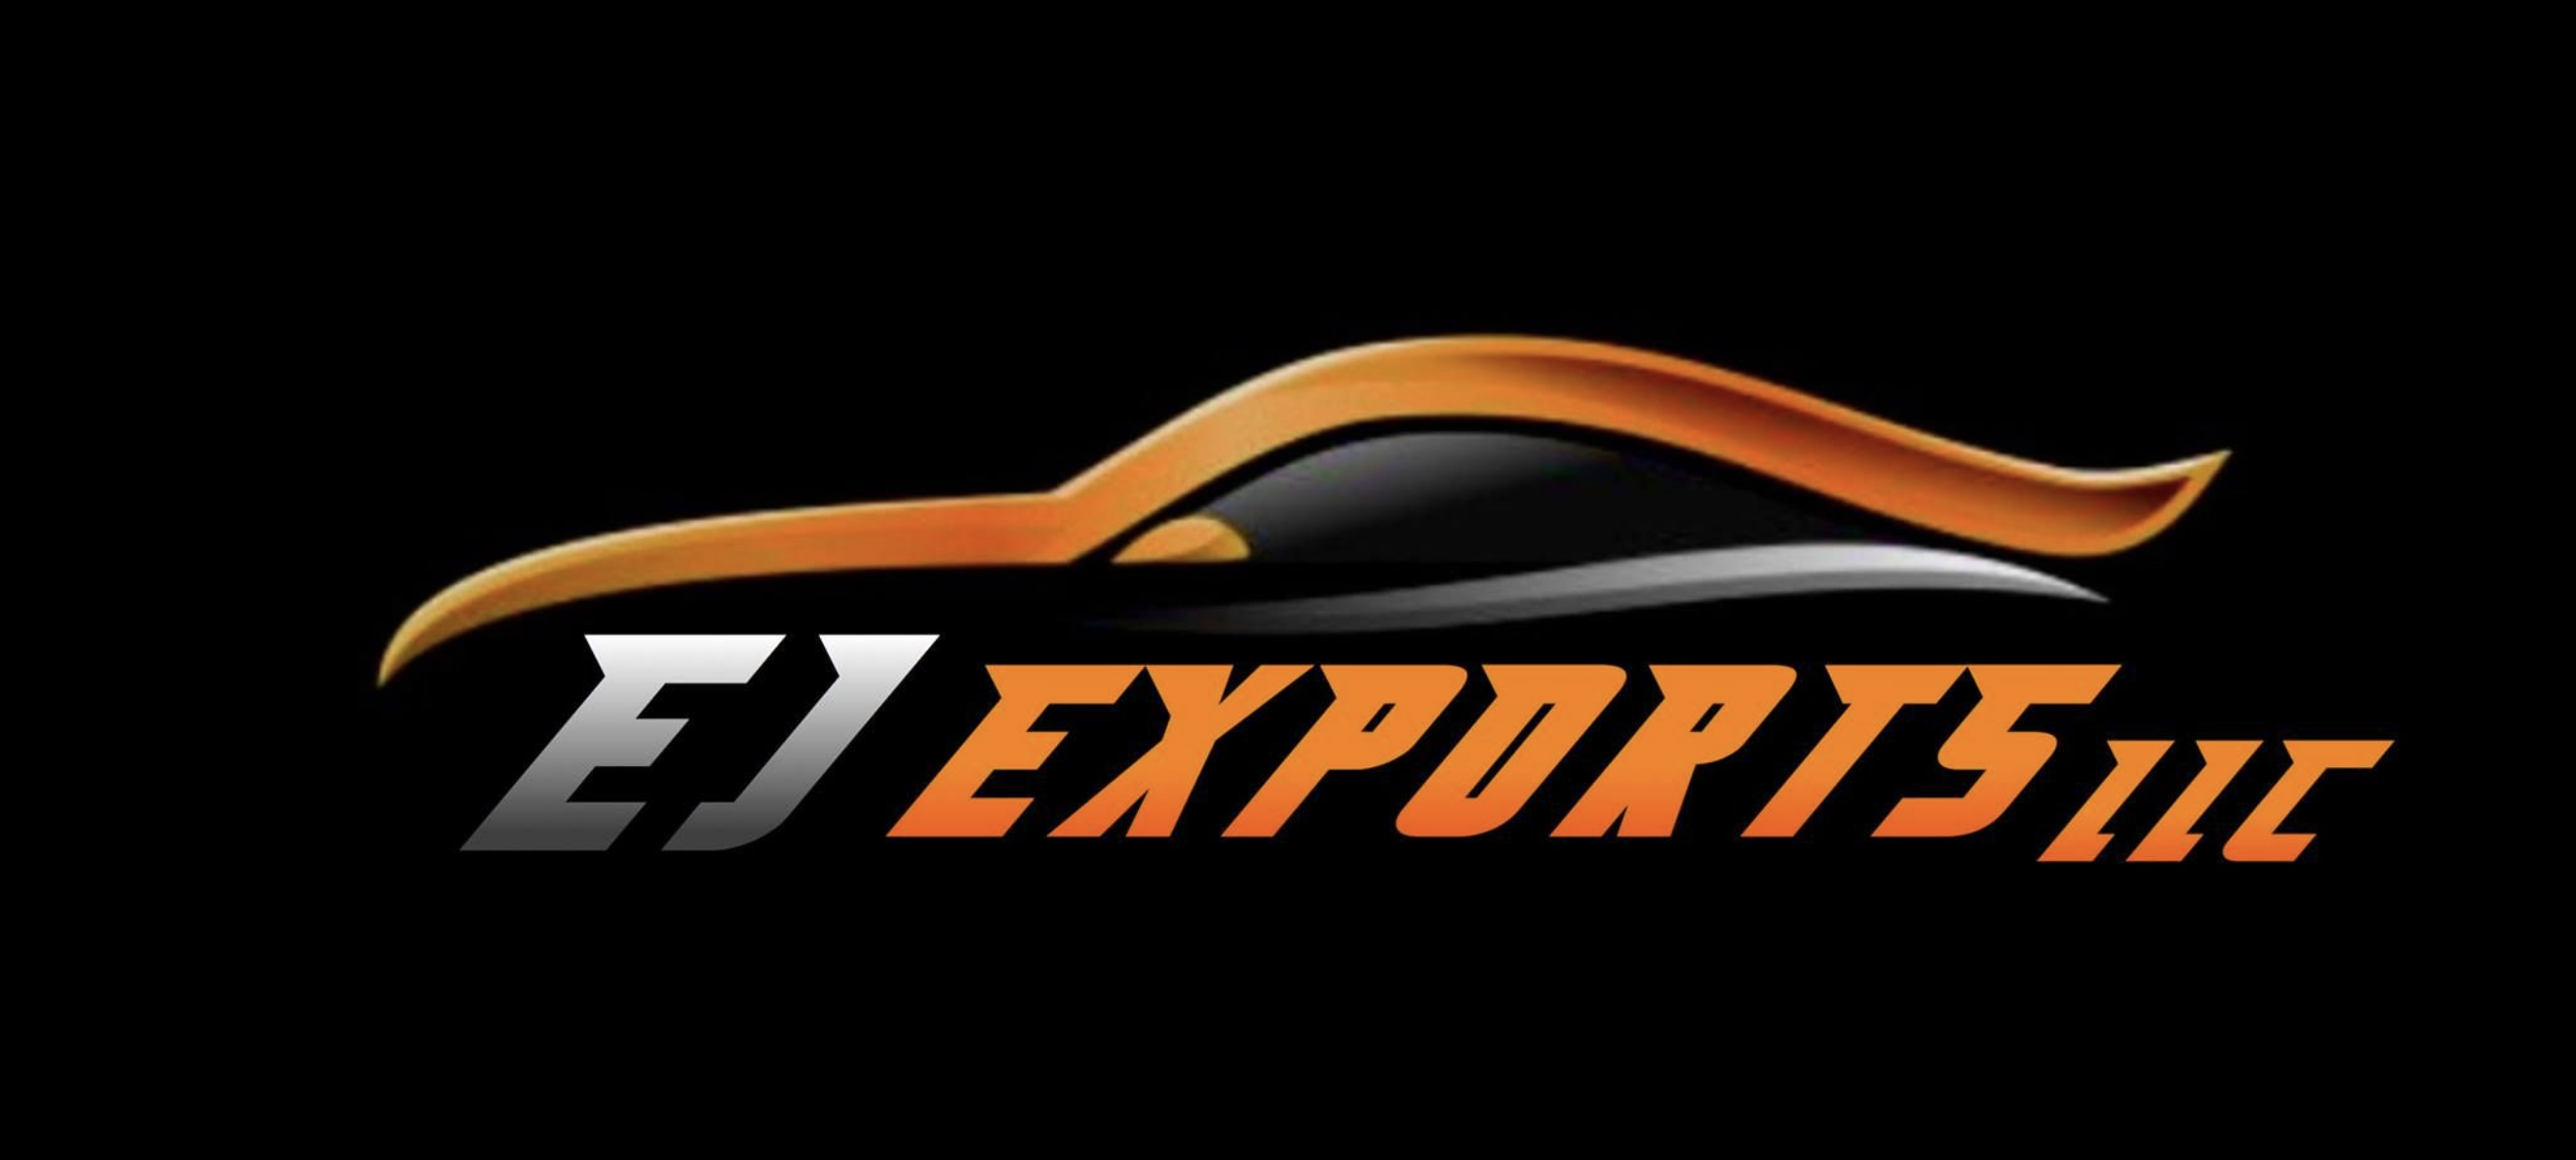 EJ Exports LLC